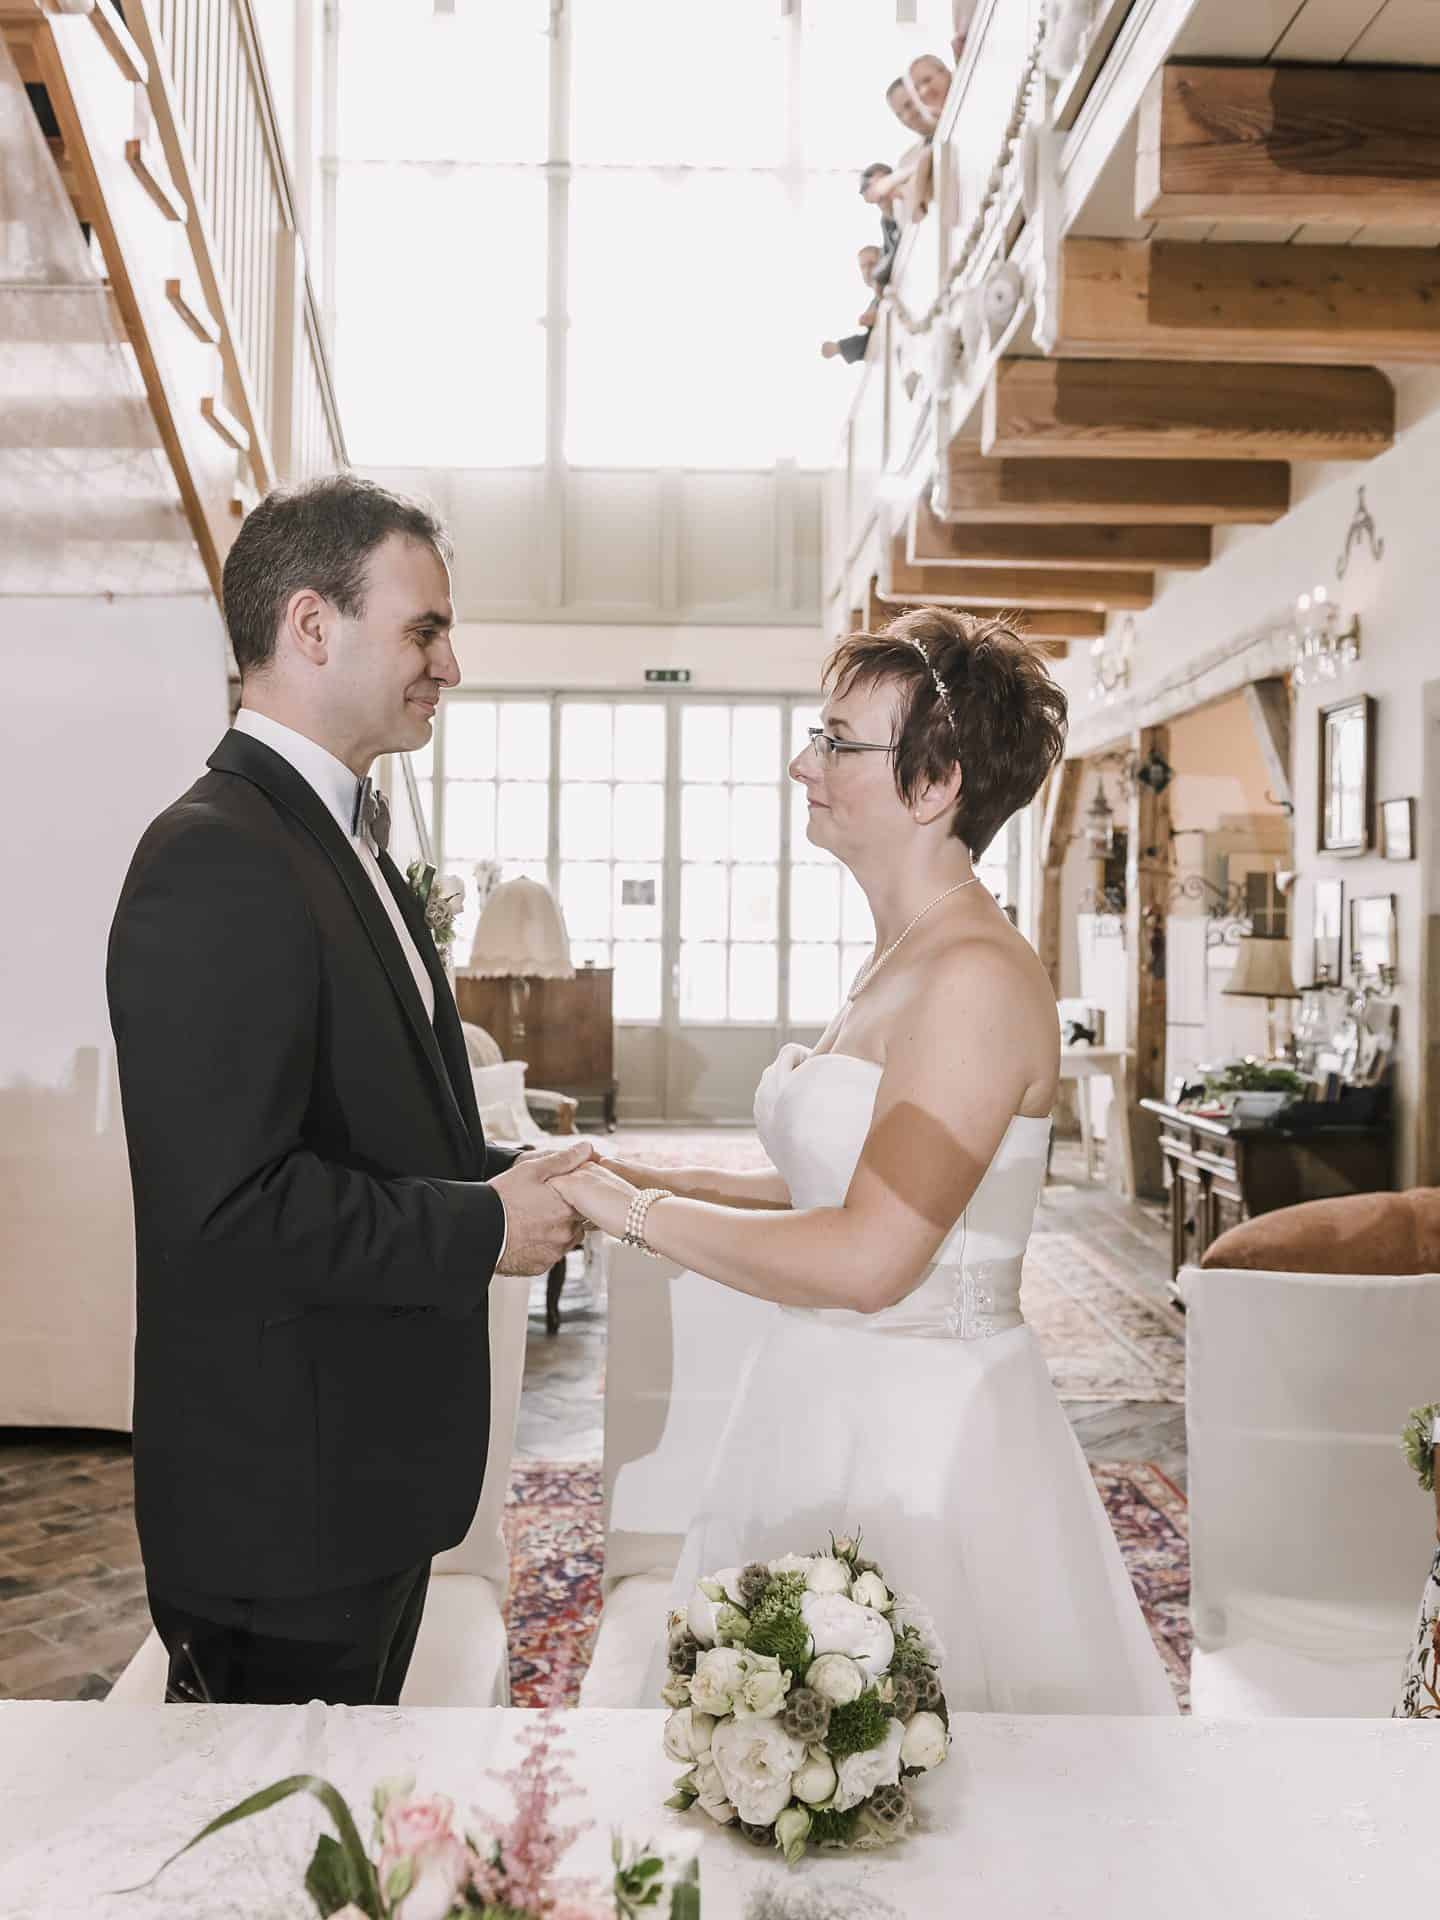 Eine Braut und ein Bräutigam stehen nebeneinander in einem Raum.